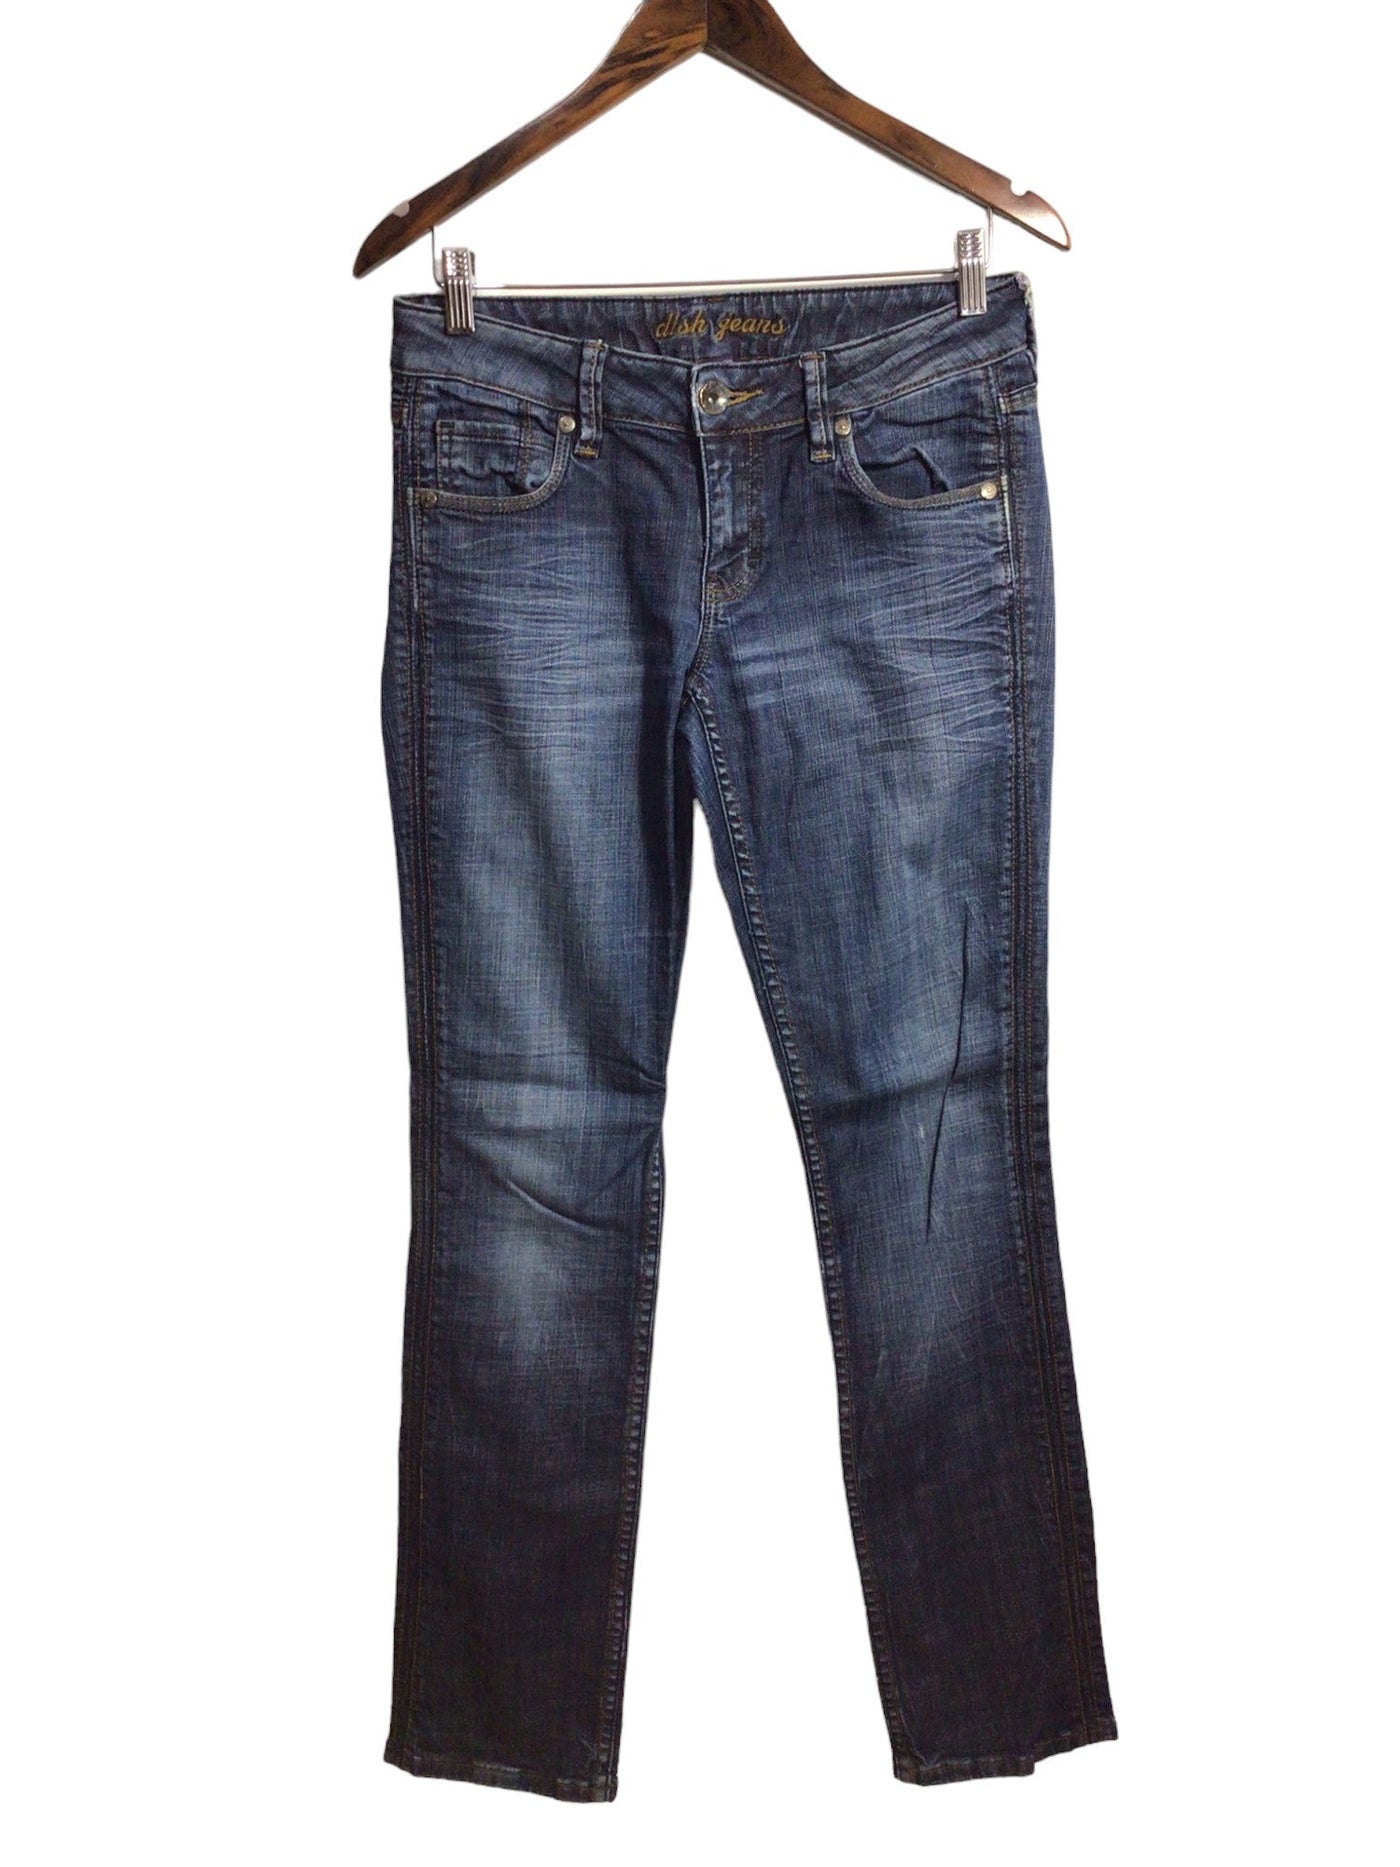 DISH JEANS Women Straight-Legged Jeans Regular fit in Blue - Size 28x32 | 15 $ KOOP